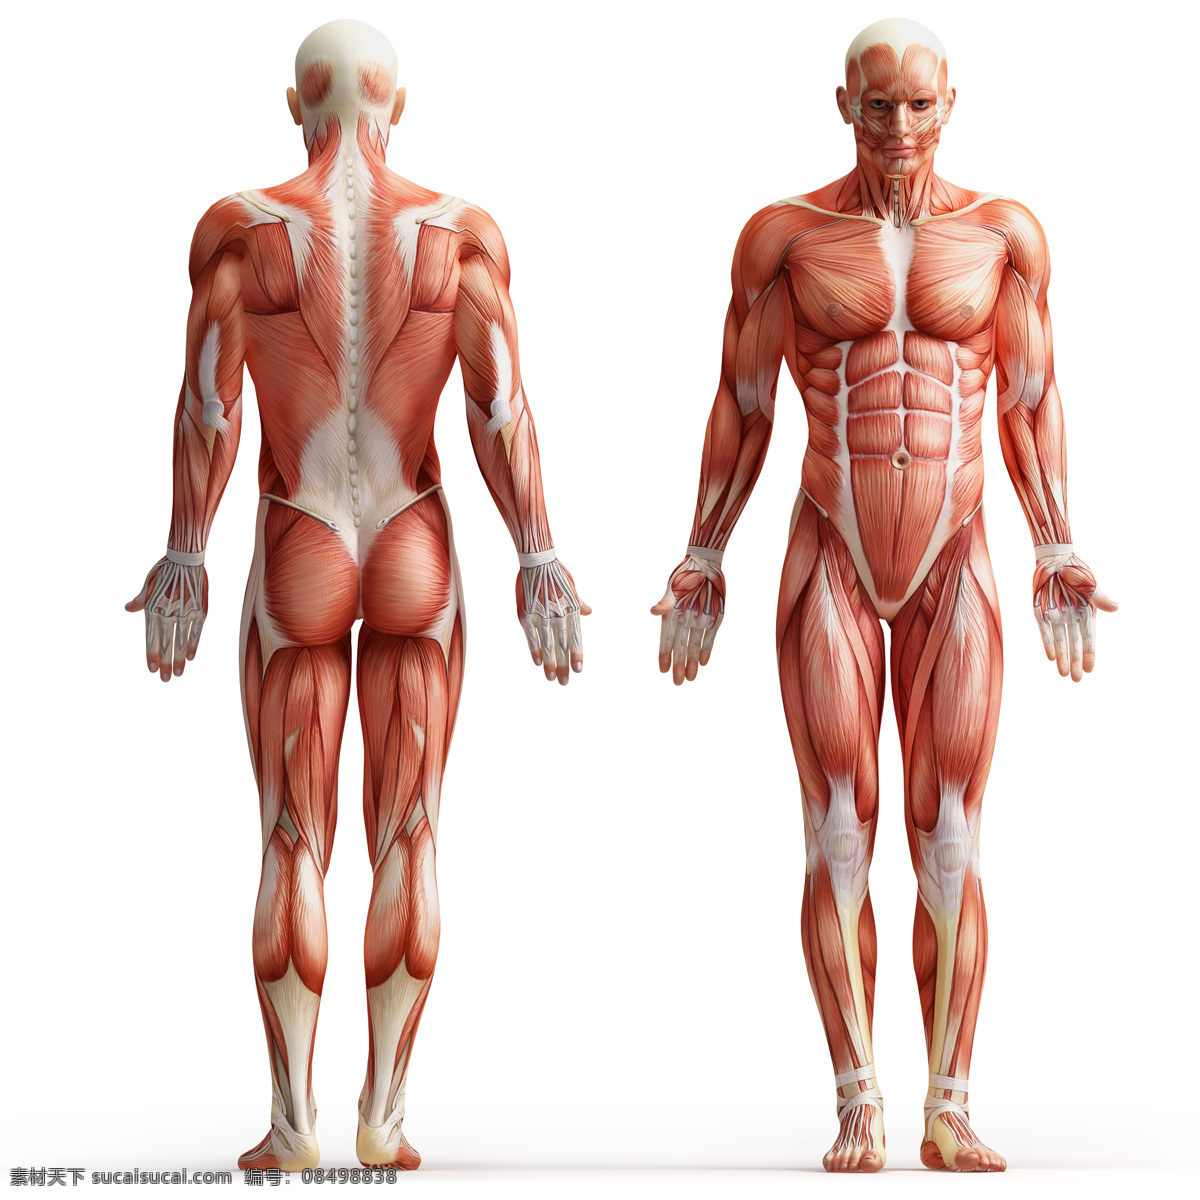 男性 人体 肌肉 人体解剖学 男性人体 肌肉组织图 医学 医疗护理 现代科技